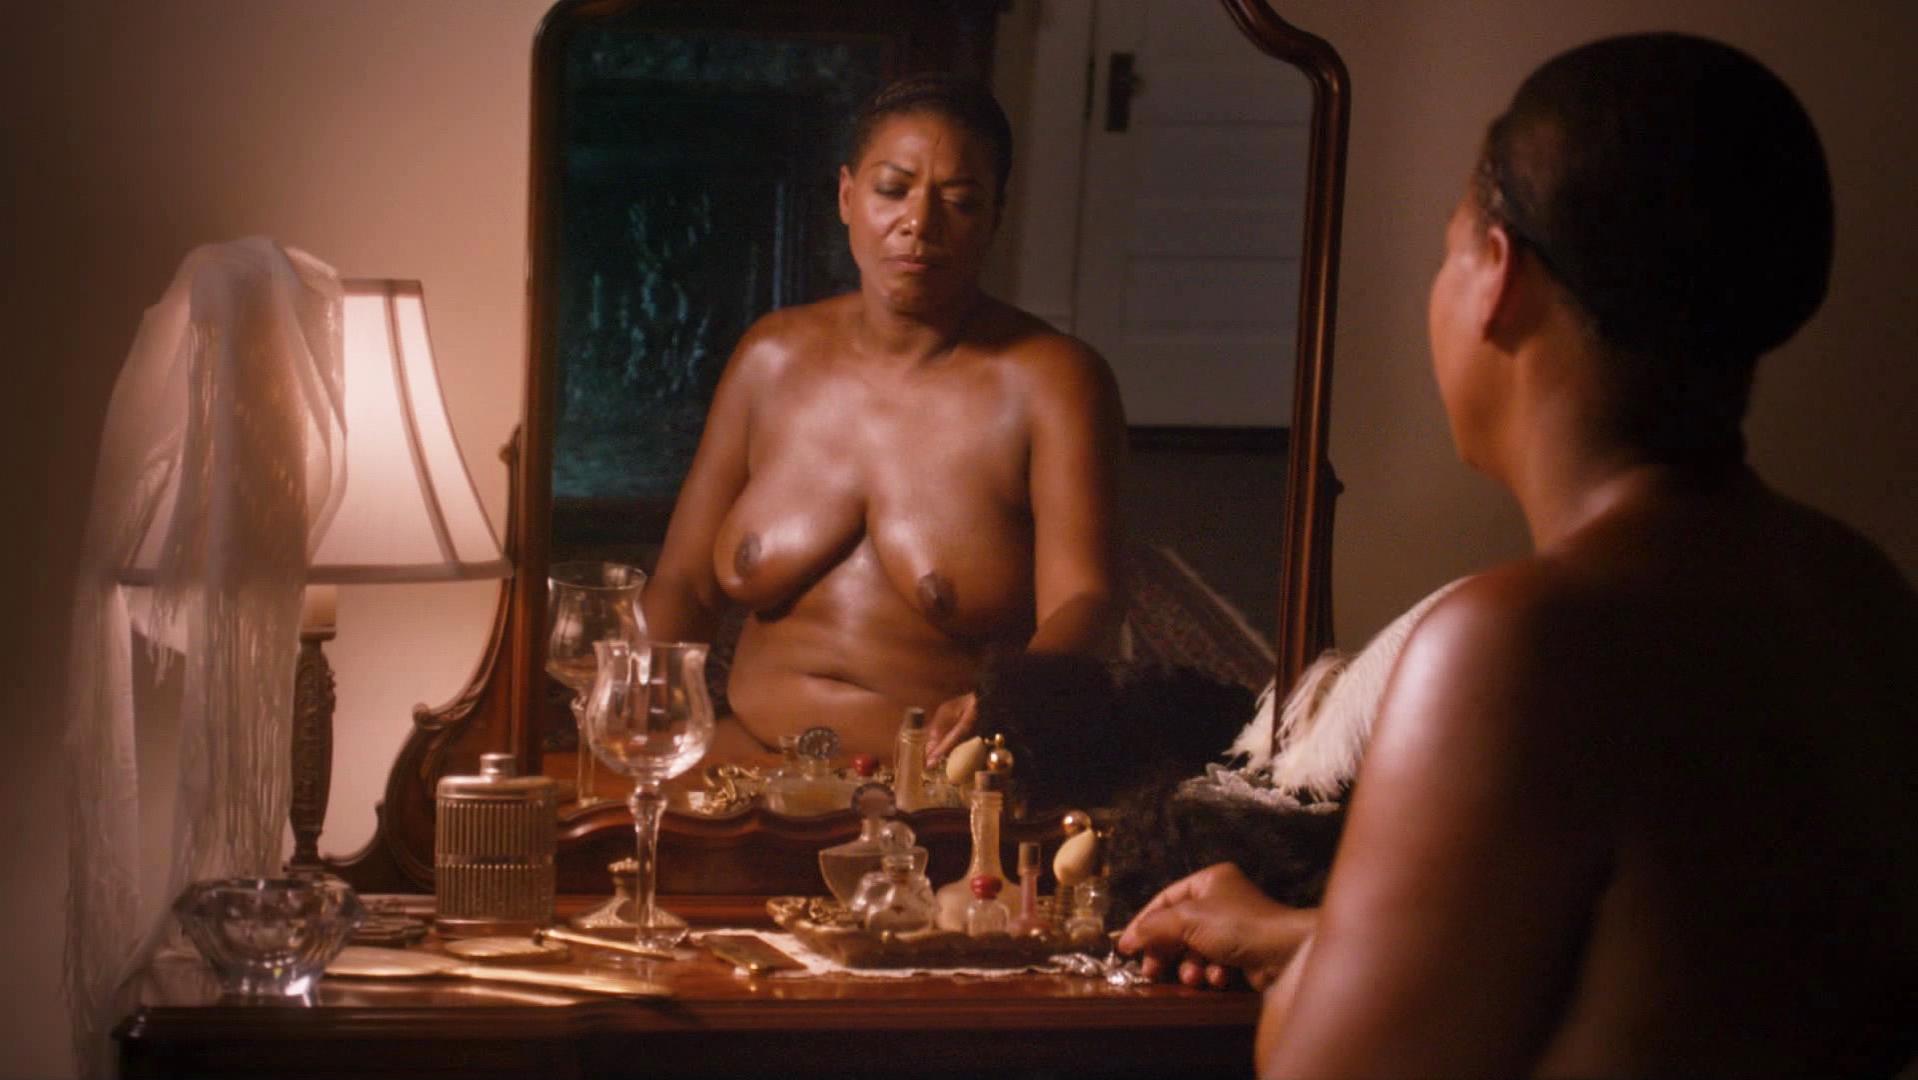 Nude video celebs Â» Queen Latifah nude - Bessie (2015)